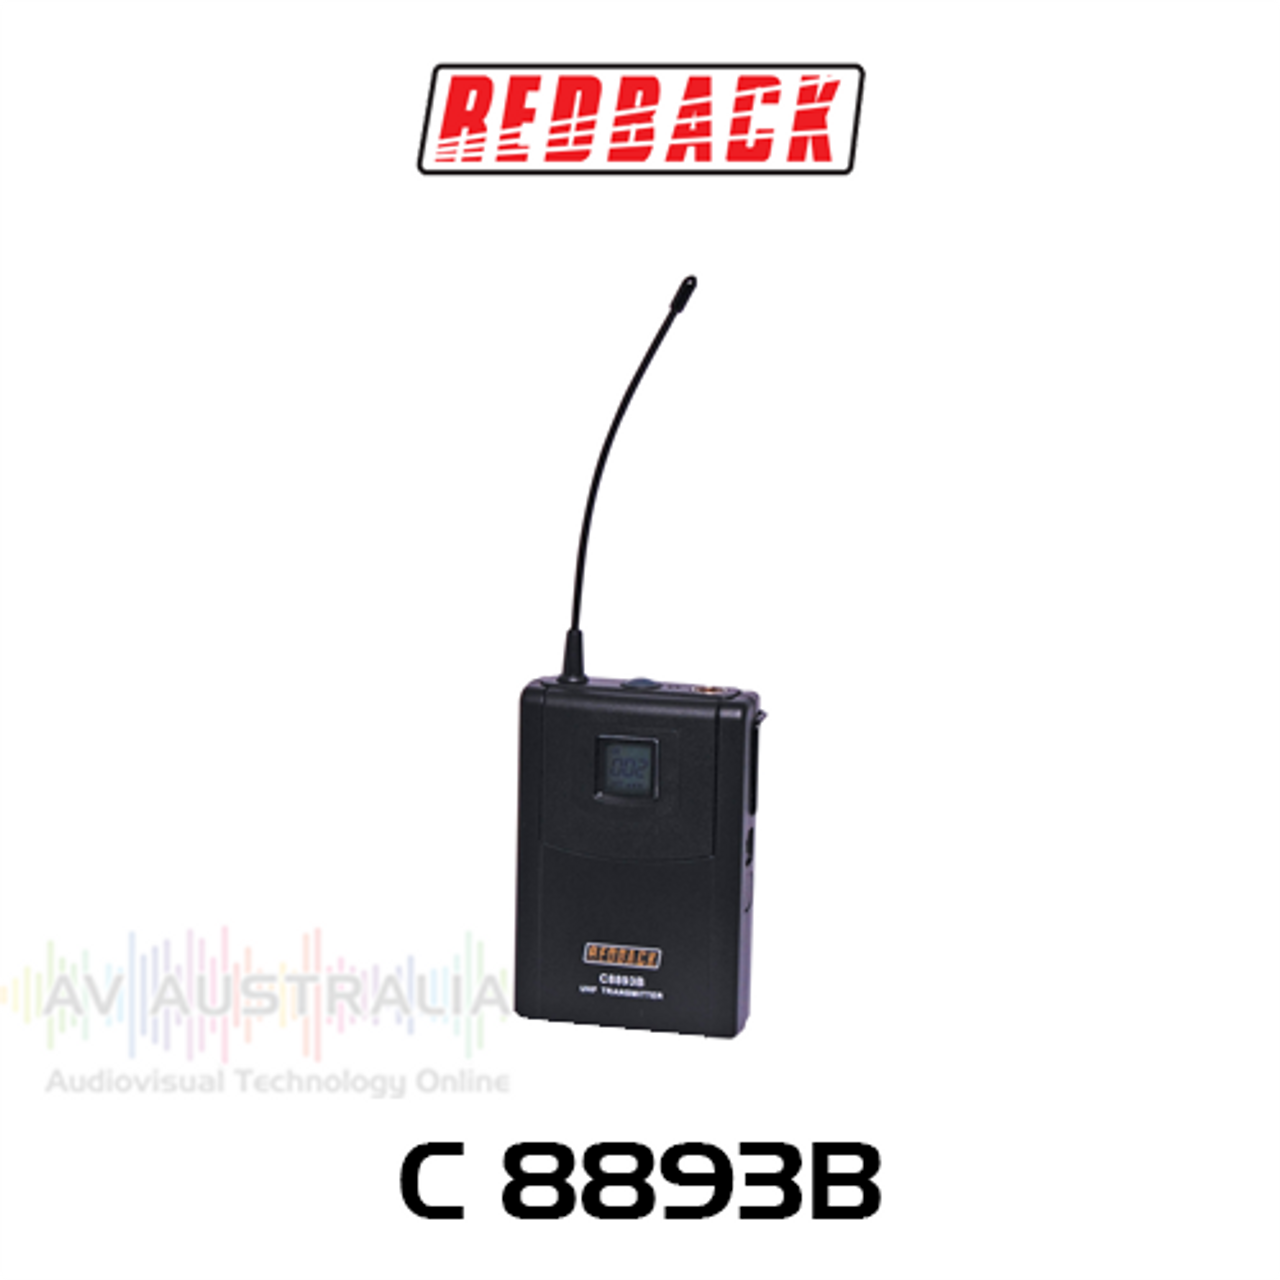 Redback Wireless UHF Beltpack Mic 700 Channel